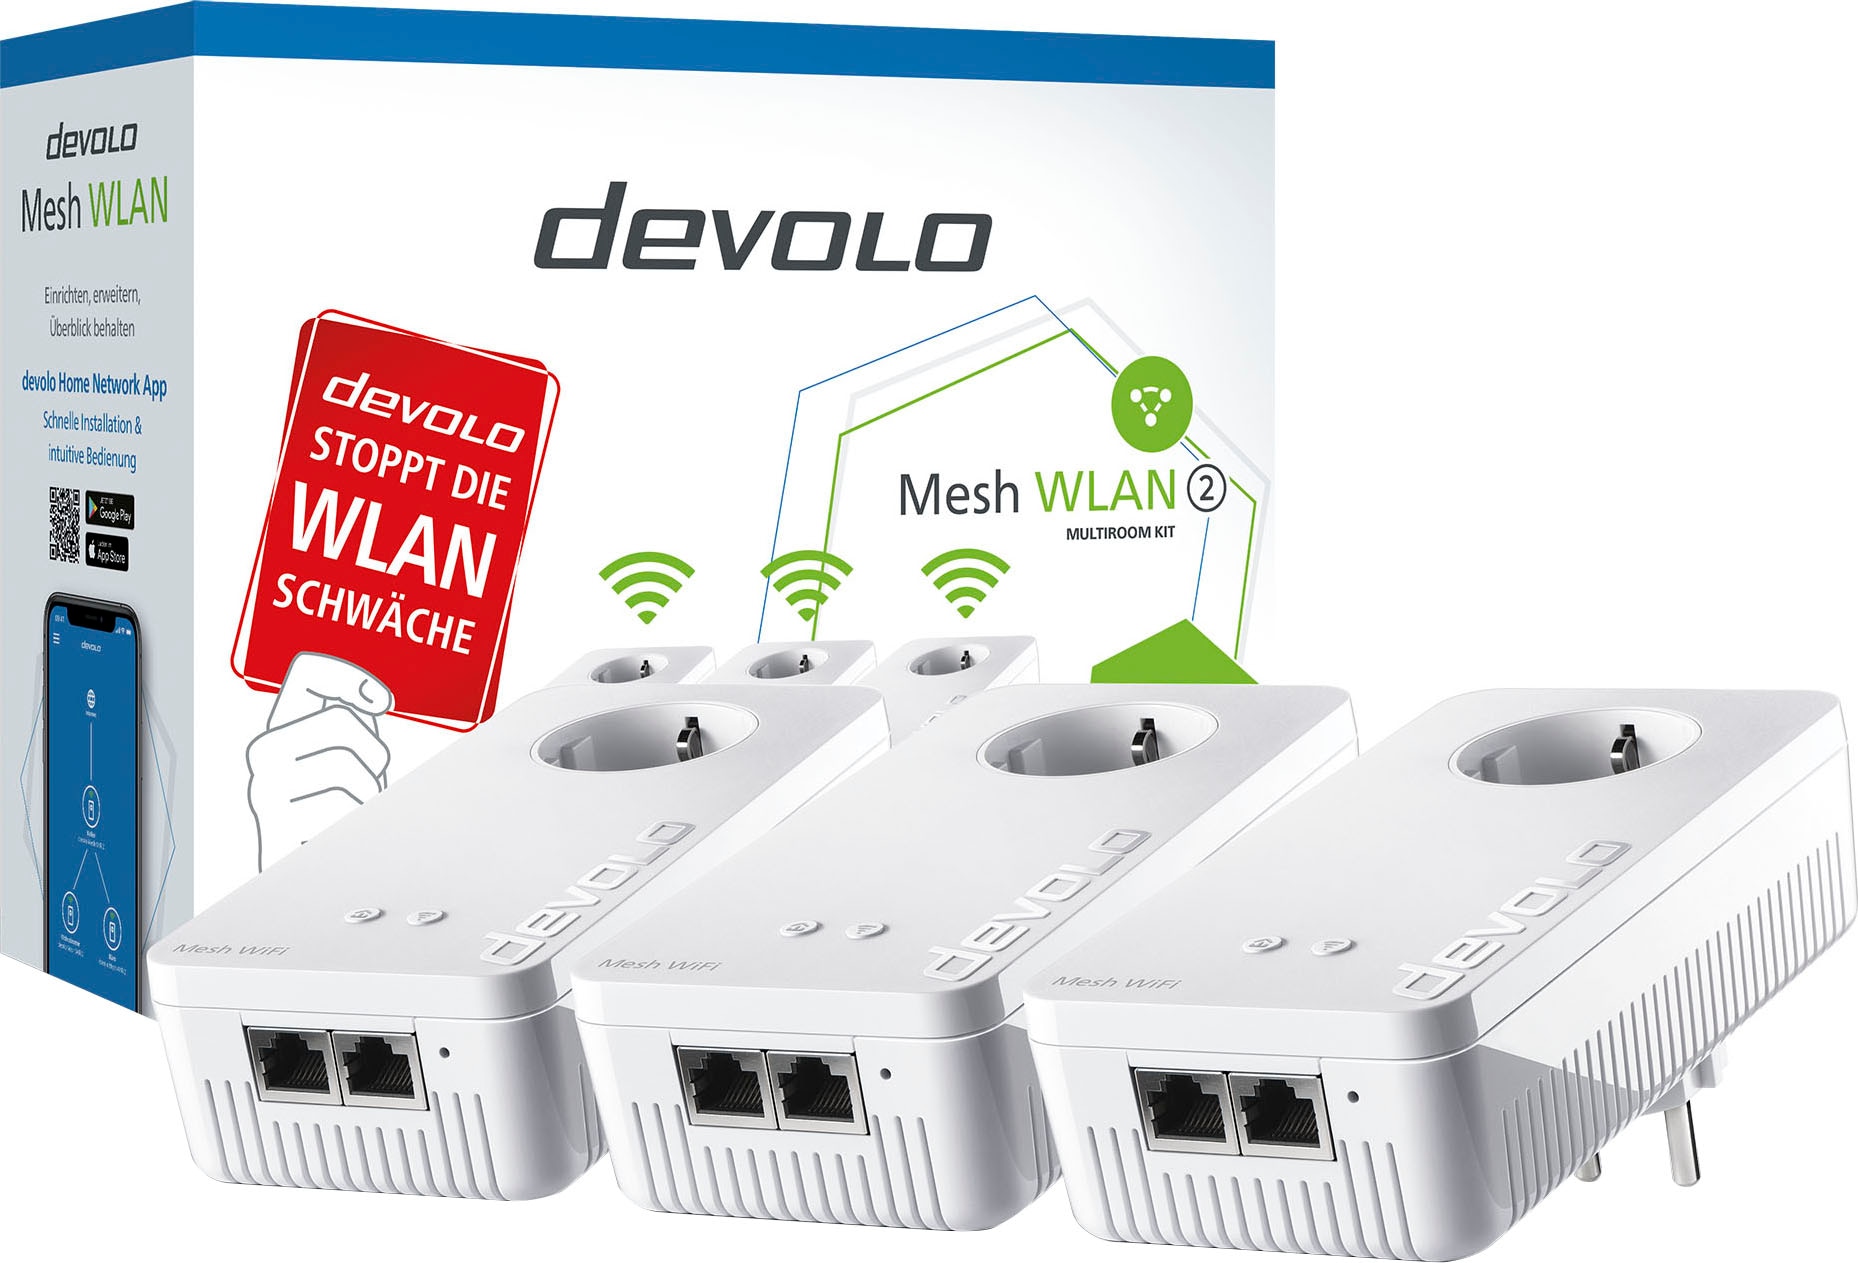 2 WLAN DEVOLO Kit« Netzwerk-Switch %Sale Multiroom jetzt im »Mesh